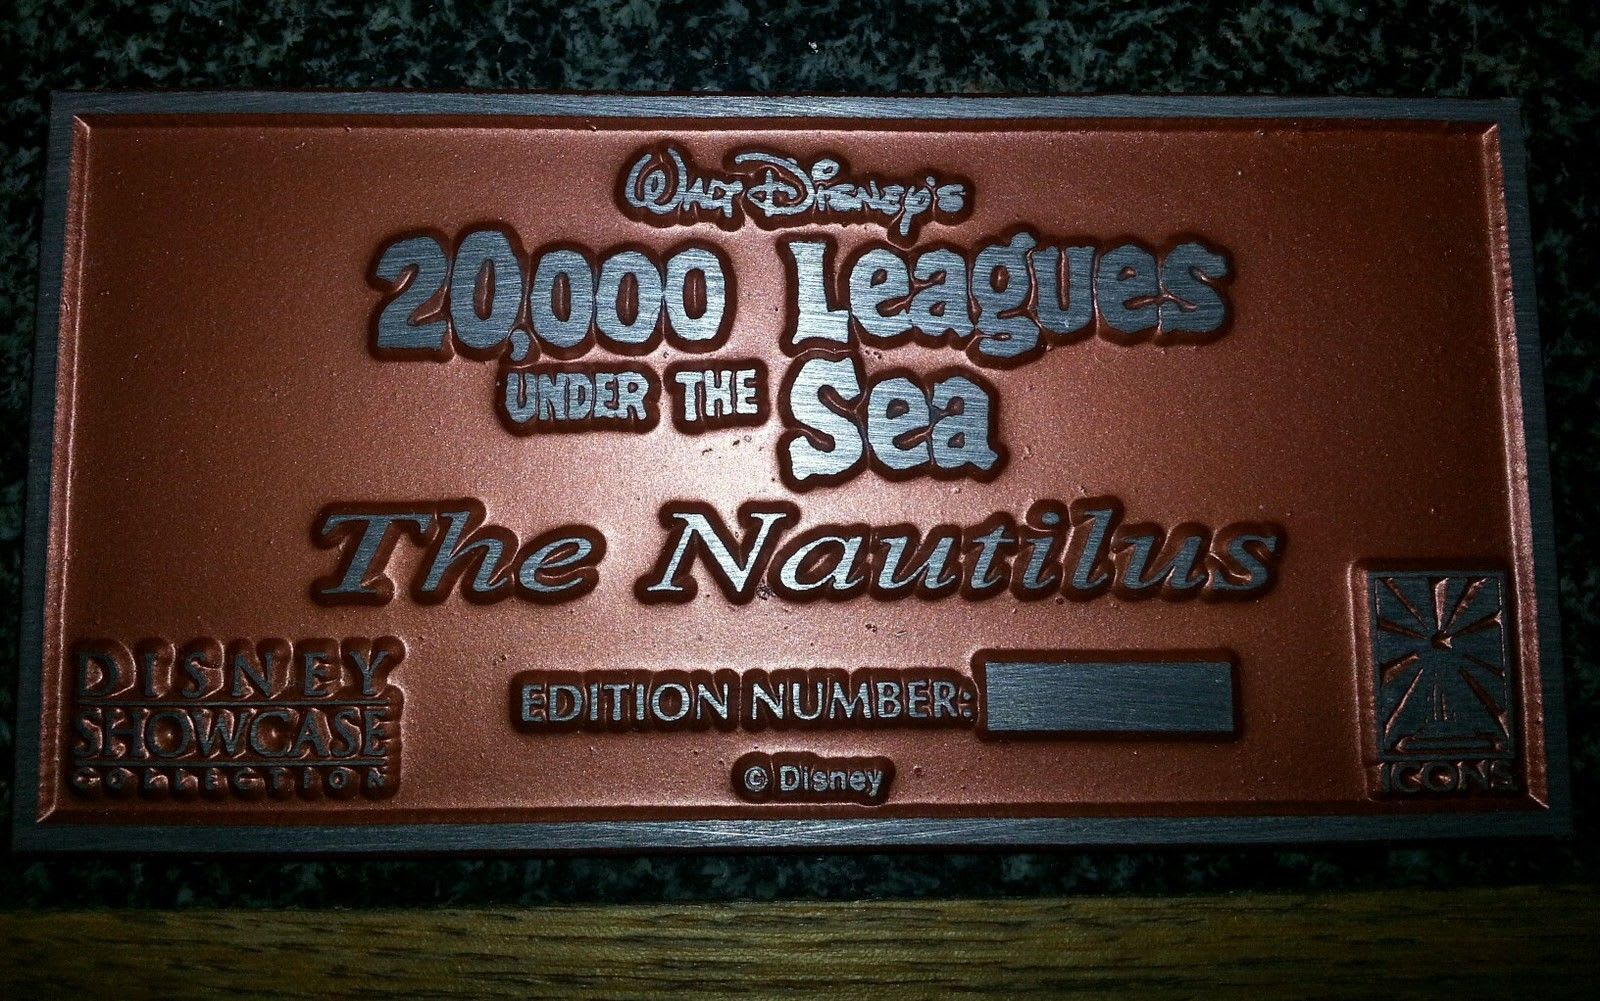 ディズニー 海底二万里 000 Leagues Under The Sea ノーチラス号プラーク プロップレプリカ わくわく ディズニー グッズ